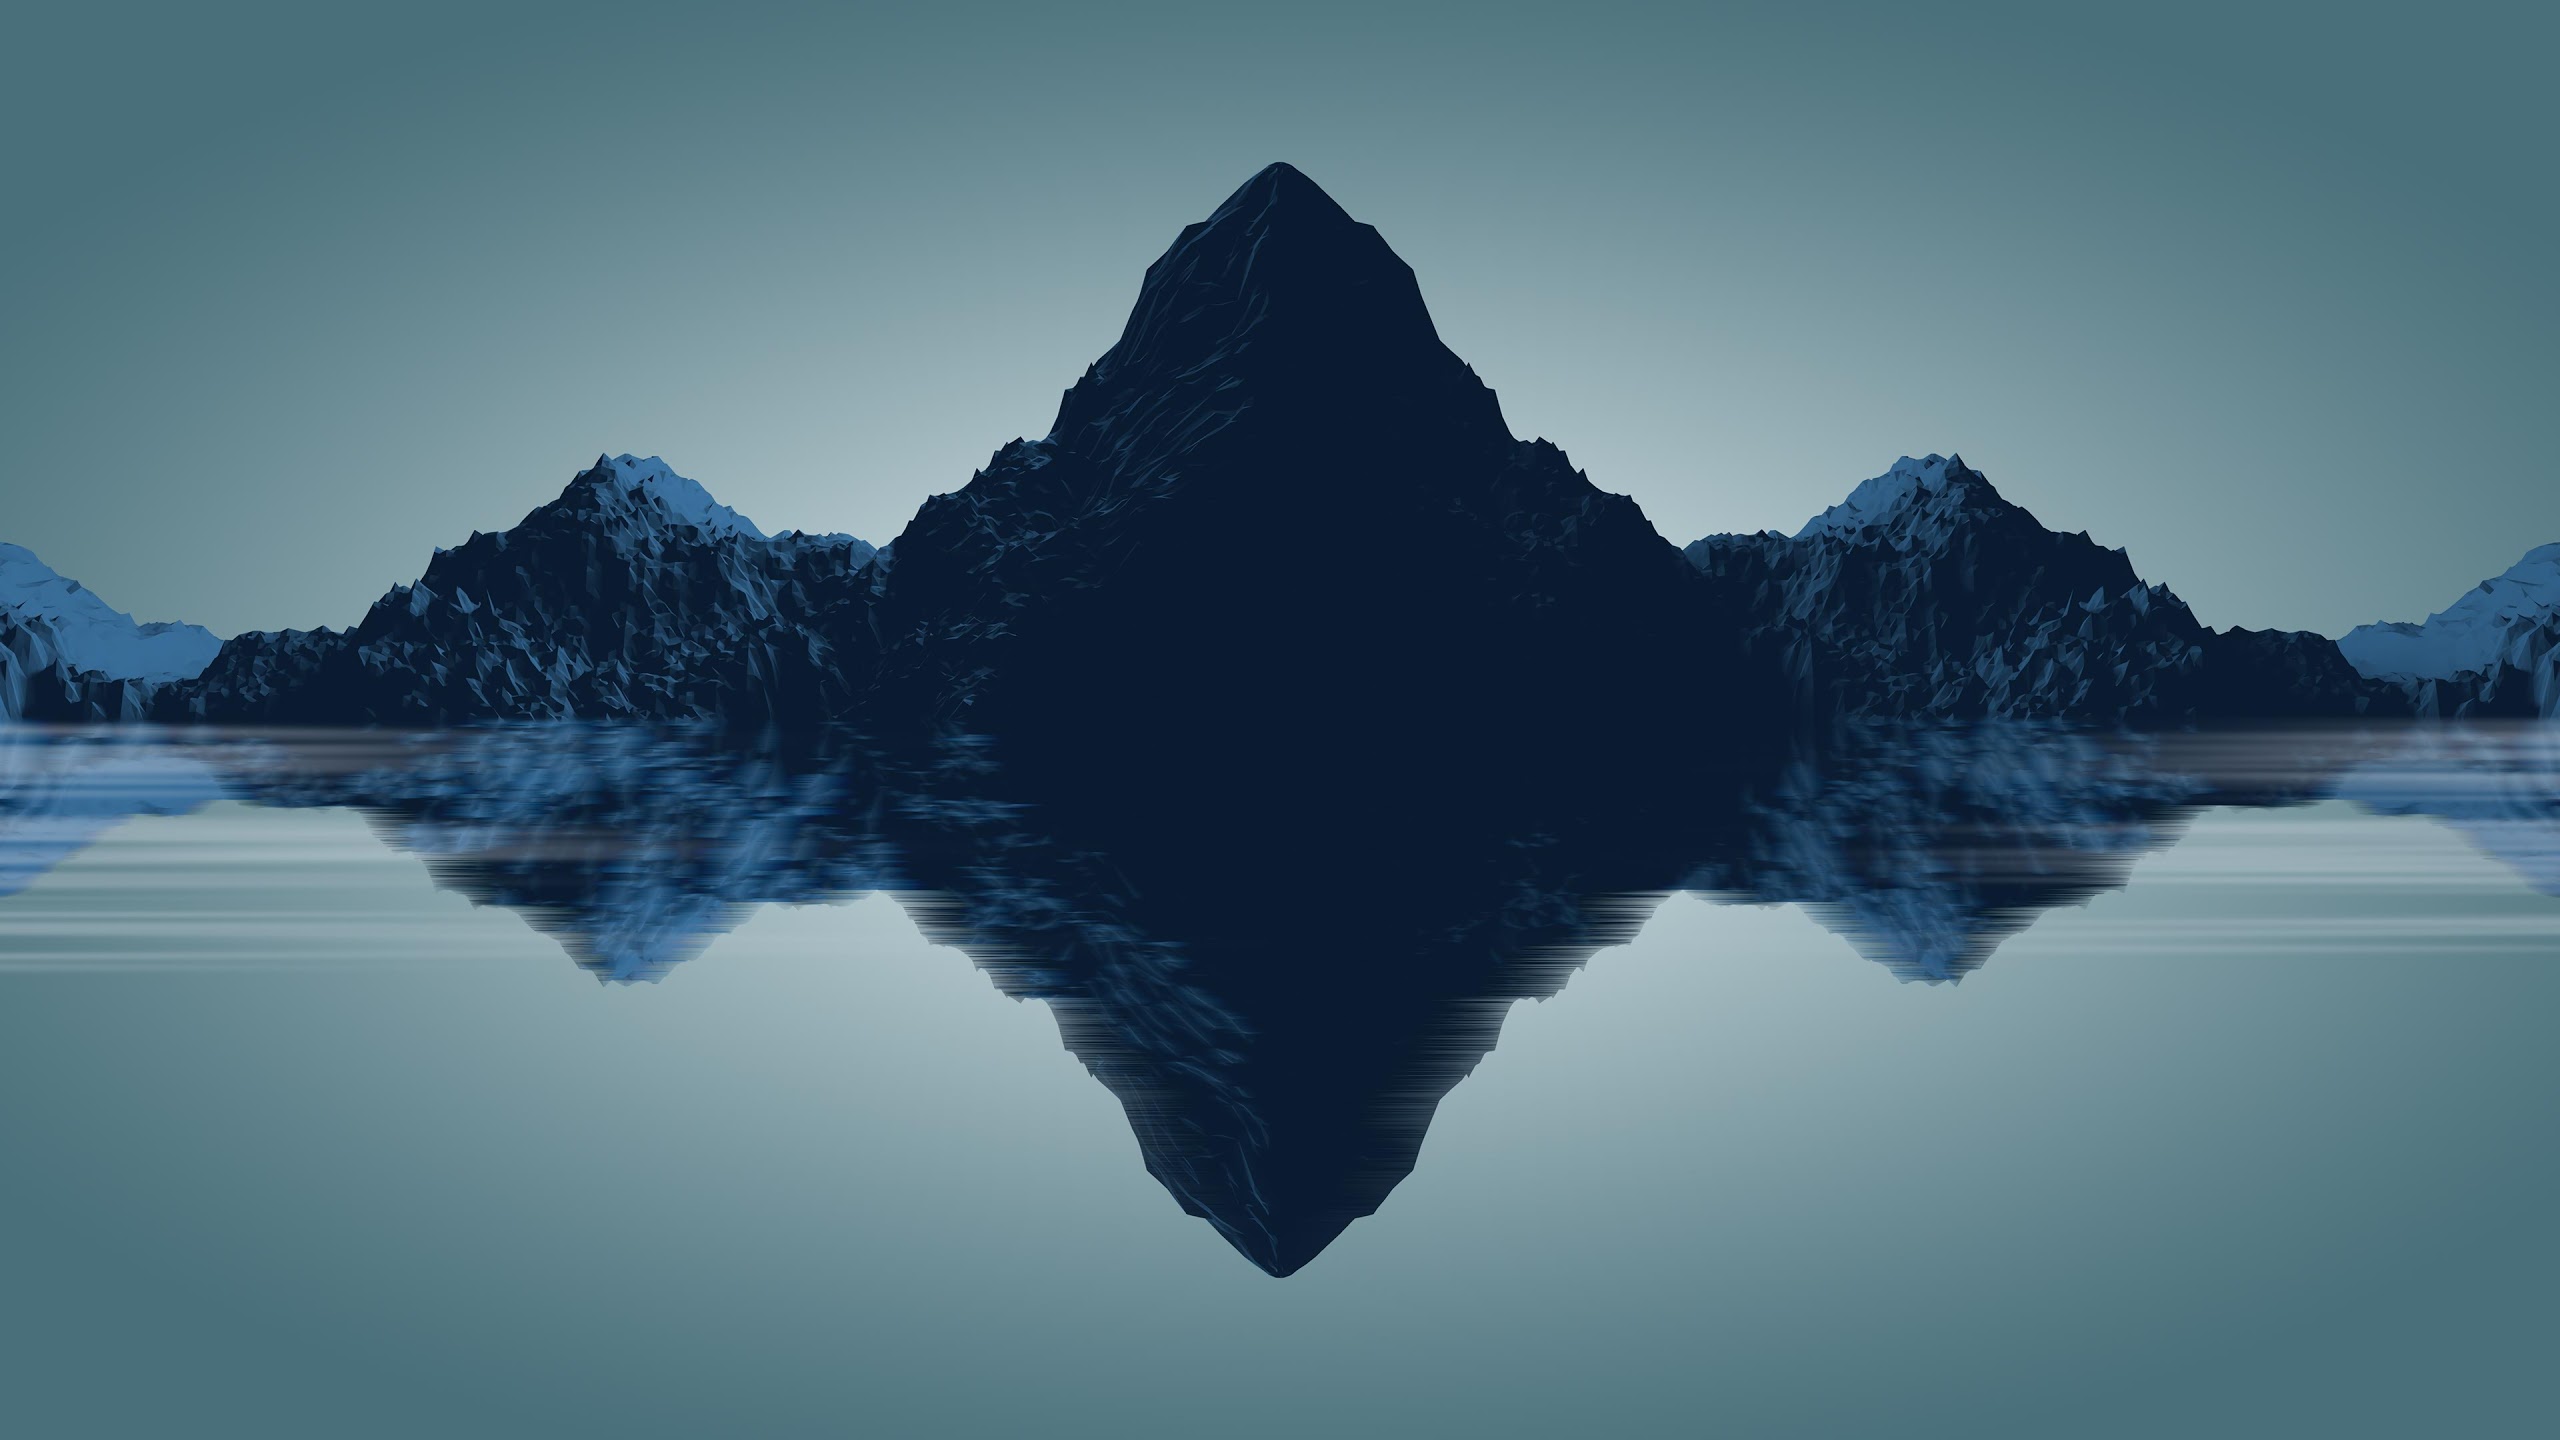 Mountain, Landscape, Abstract, 4k, - Minimalist Wallpaper 4k - HD Wallpaper 